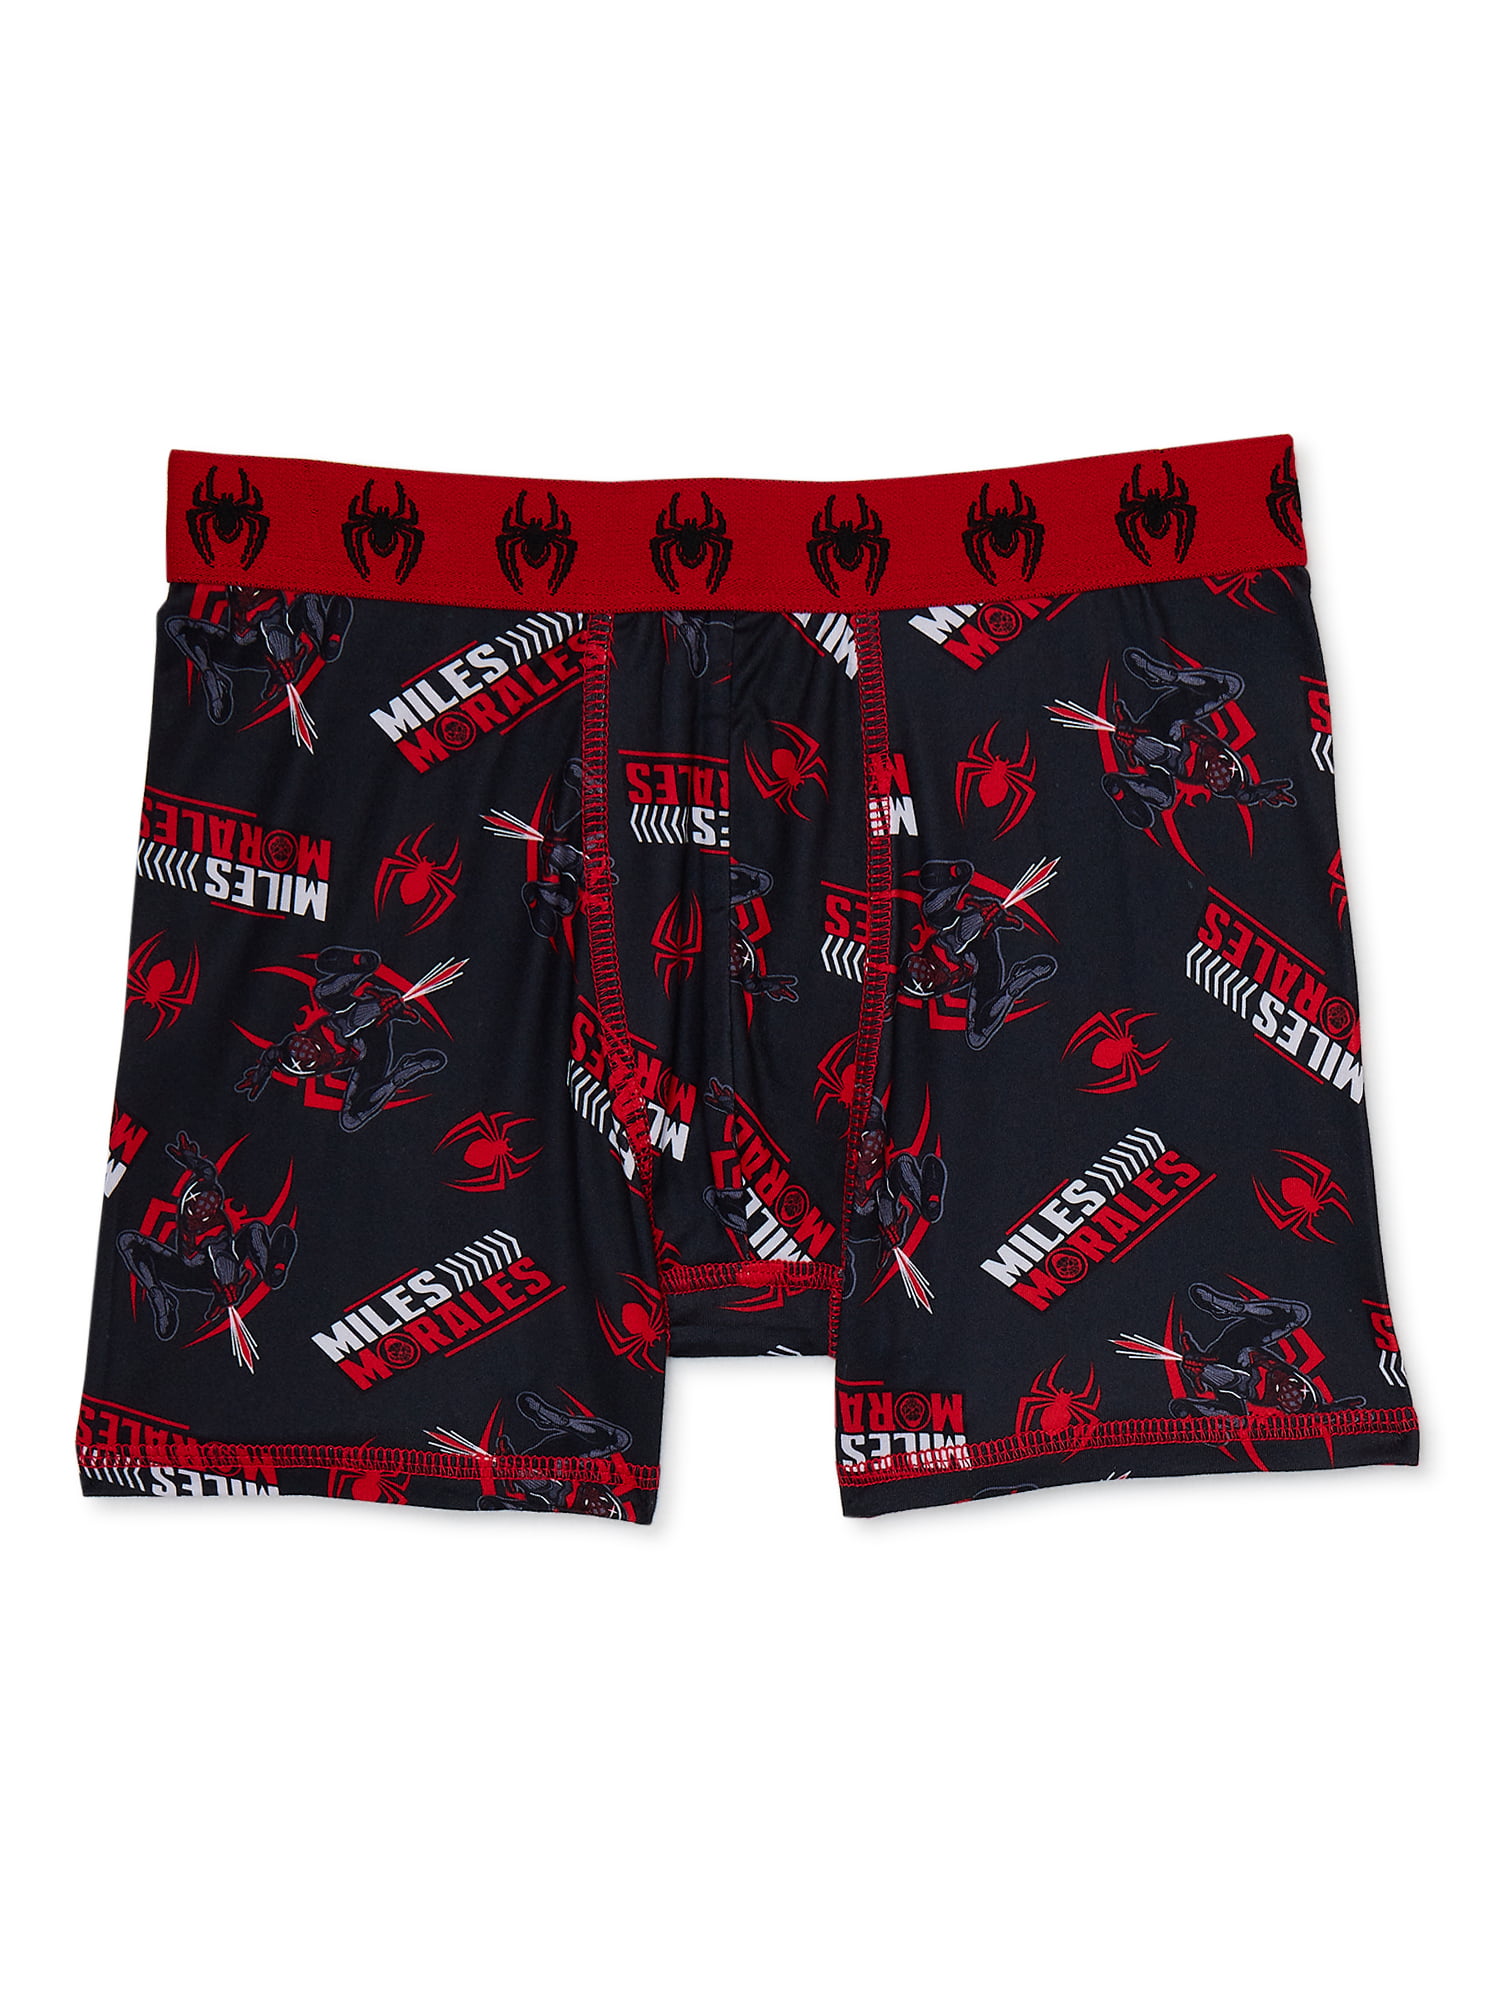 Spider-Man Costume Suit Men's Underwear Boxer Briefs (32-34) Red